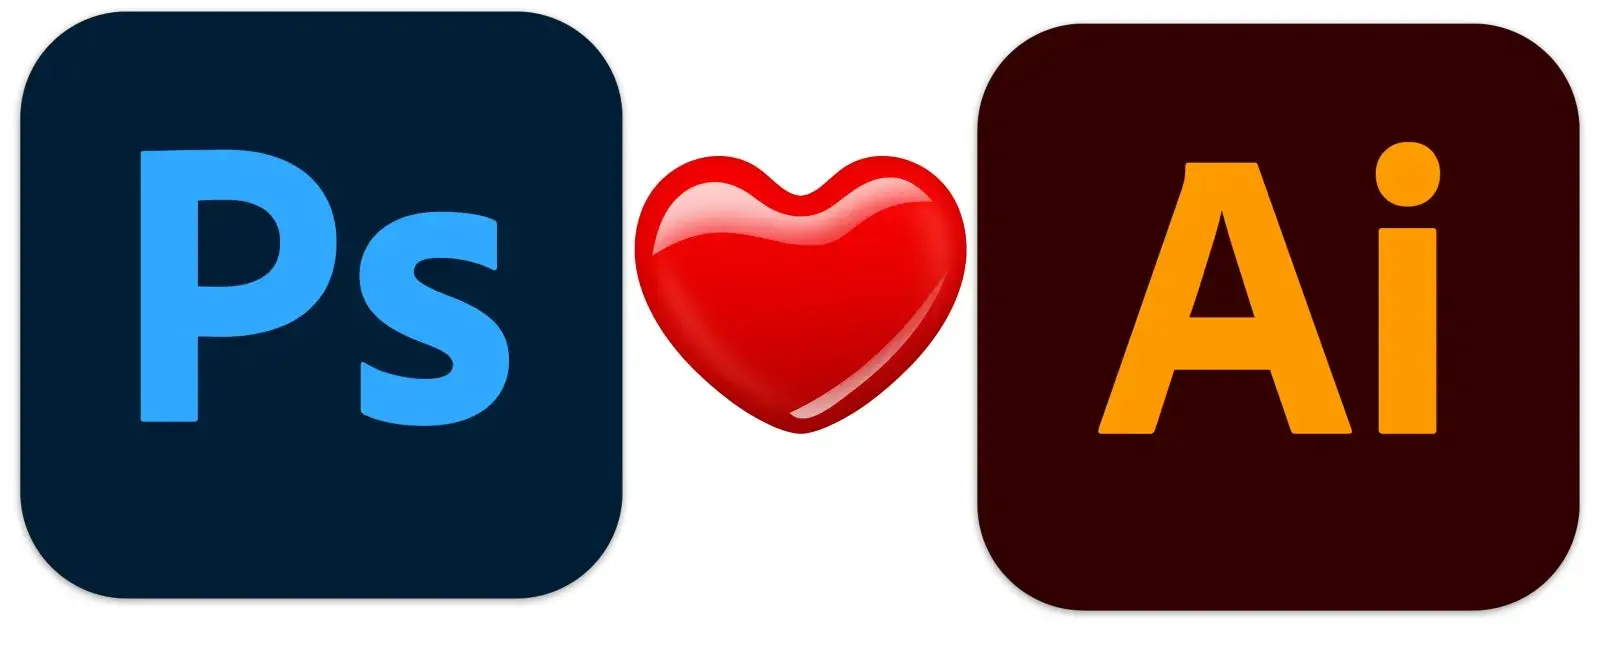 El logo de Photoshop y el logo de Illustrator, en la mitad hay un icono de un corazón